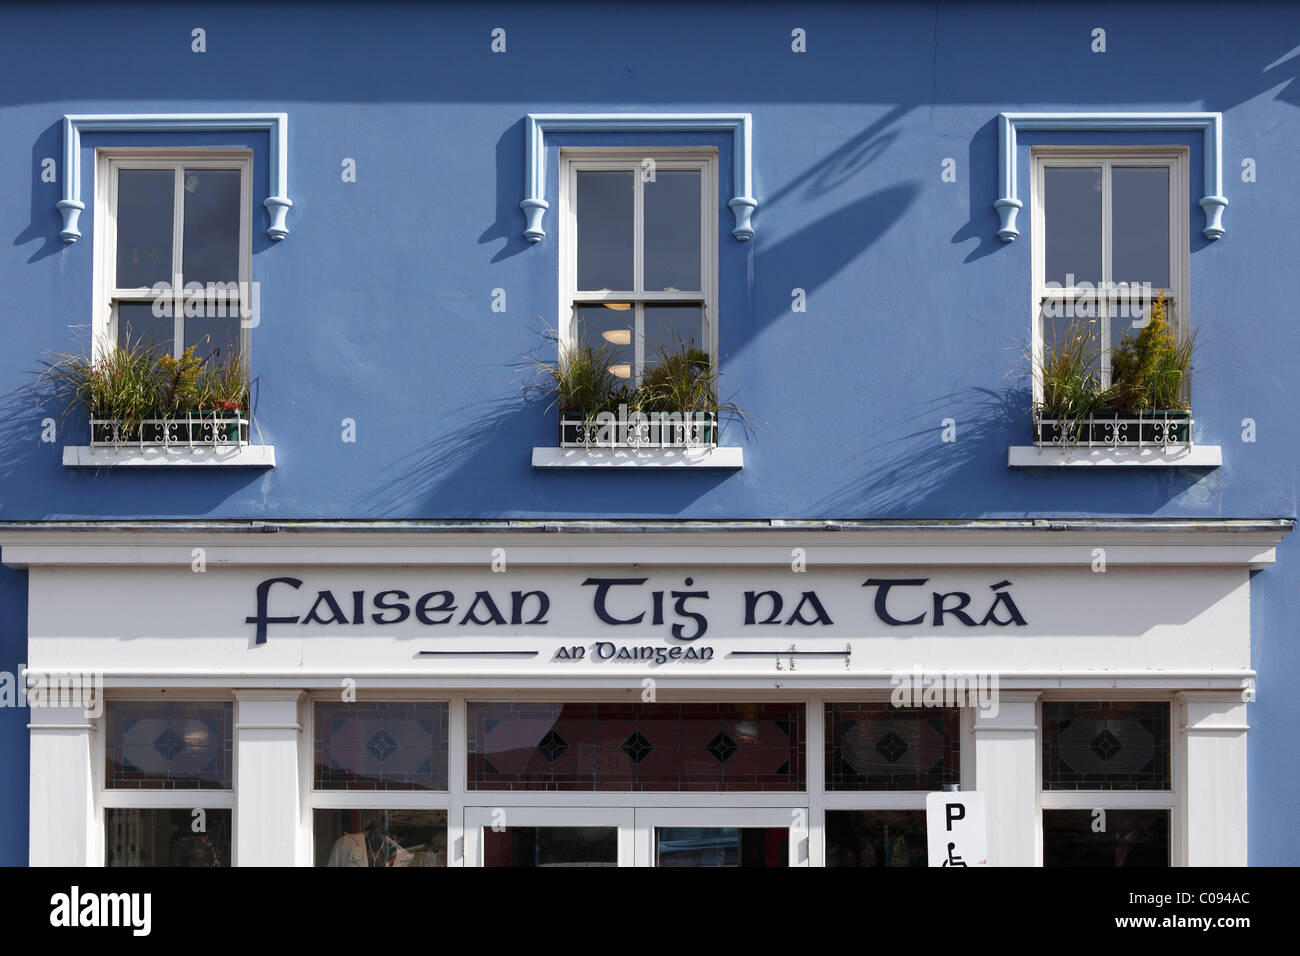 La facciata della casa con bottega, lettering irlandese, Dingle, nella contea di Kerry, Irlanda Isole britanniche, Europa Foto Stock